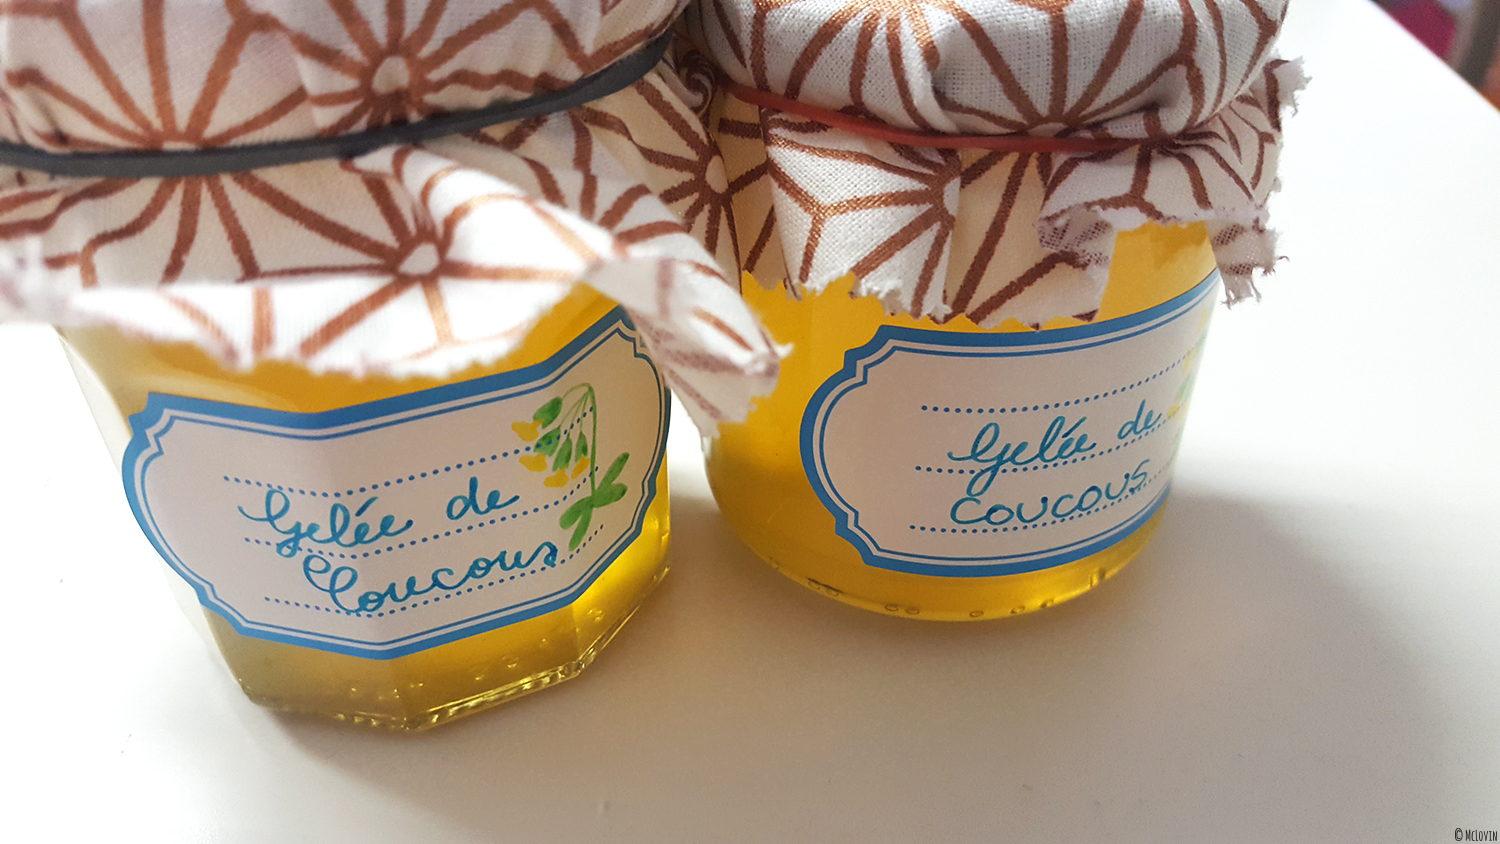 La gelée de fleurs jaunes et comestibles de coucou ou primevère officinale en pots avec étiquettes et cache-pots en chutes de tissus.